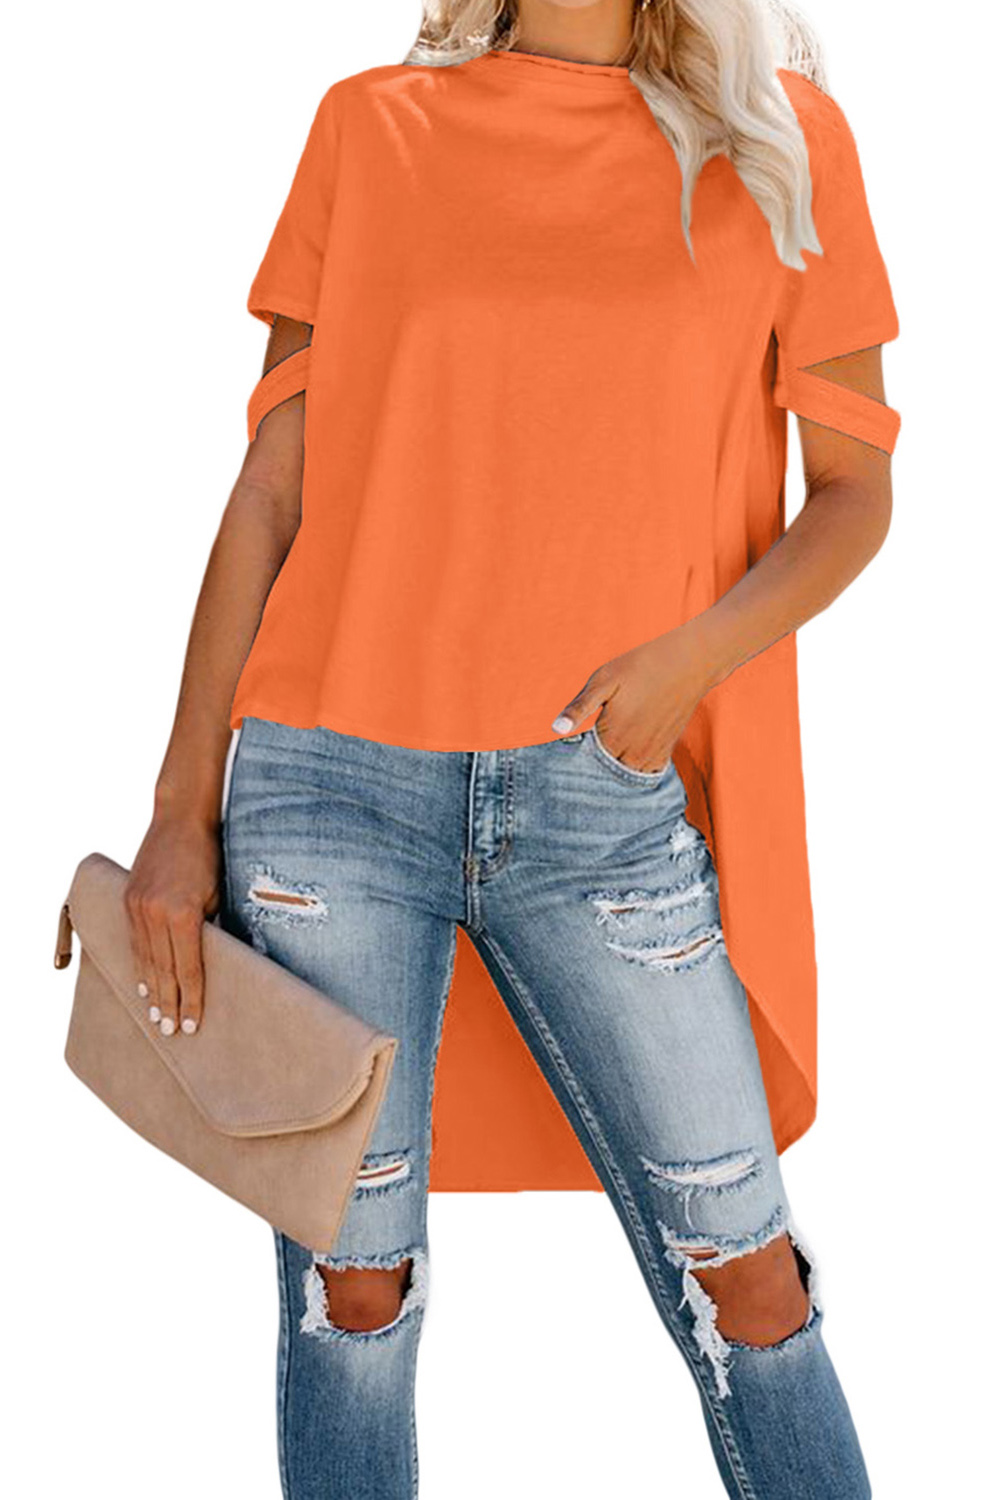 Оранжевая блуза-туника с удлинением сзади и разрезами на рукавах арт.108764  - купить в Краснодаре